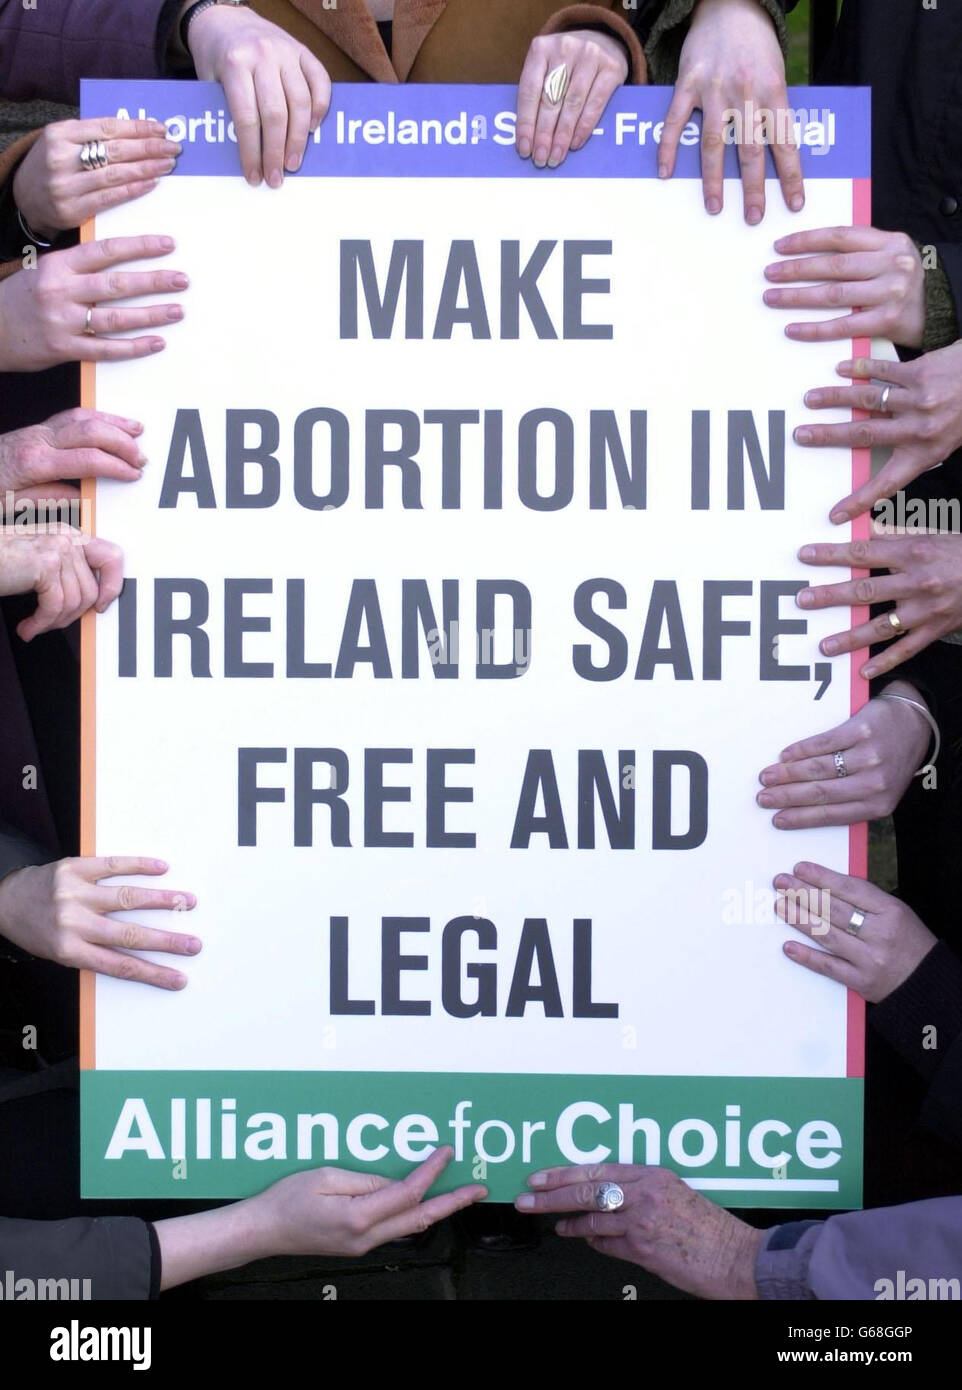 Miembros de la Alianza para la Elección protestando fuera de los edificios del Gobierno irlandés por un aborto seguro, libre y legal disponible en Irlanda. Unas 7000 mujeres irlandesas viajan al extranjero para abortar y la Alianza quiere que el gobierno reconozca sus necesidades. Foto de stock